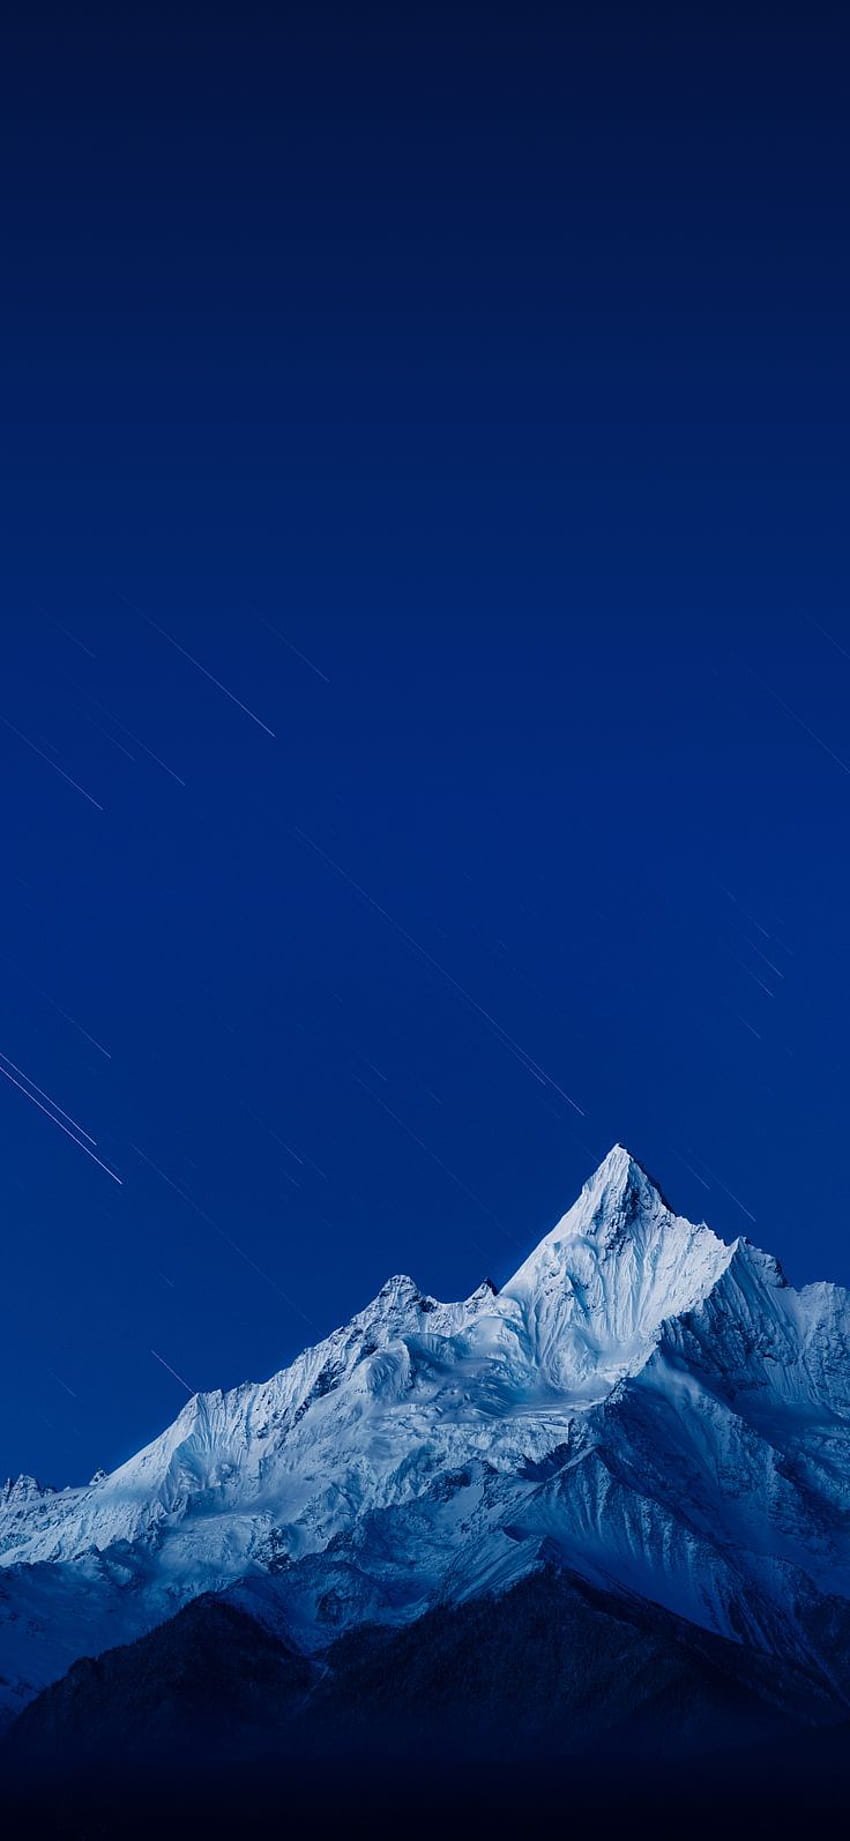 Fond de montagne bleu ciel et neige Fond d'écran de téléphone HD